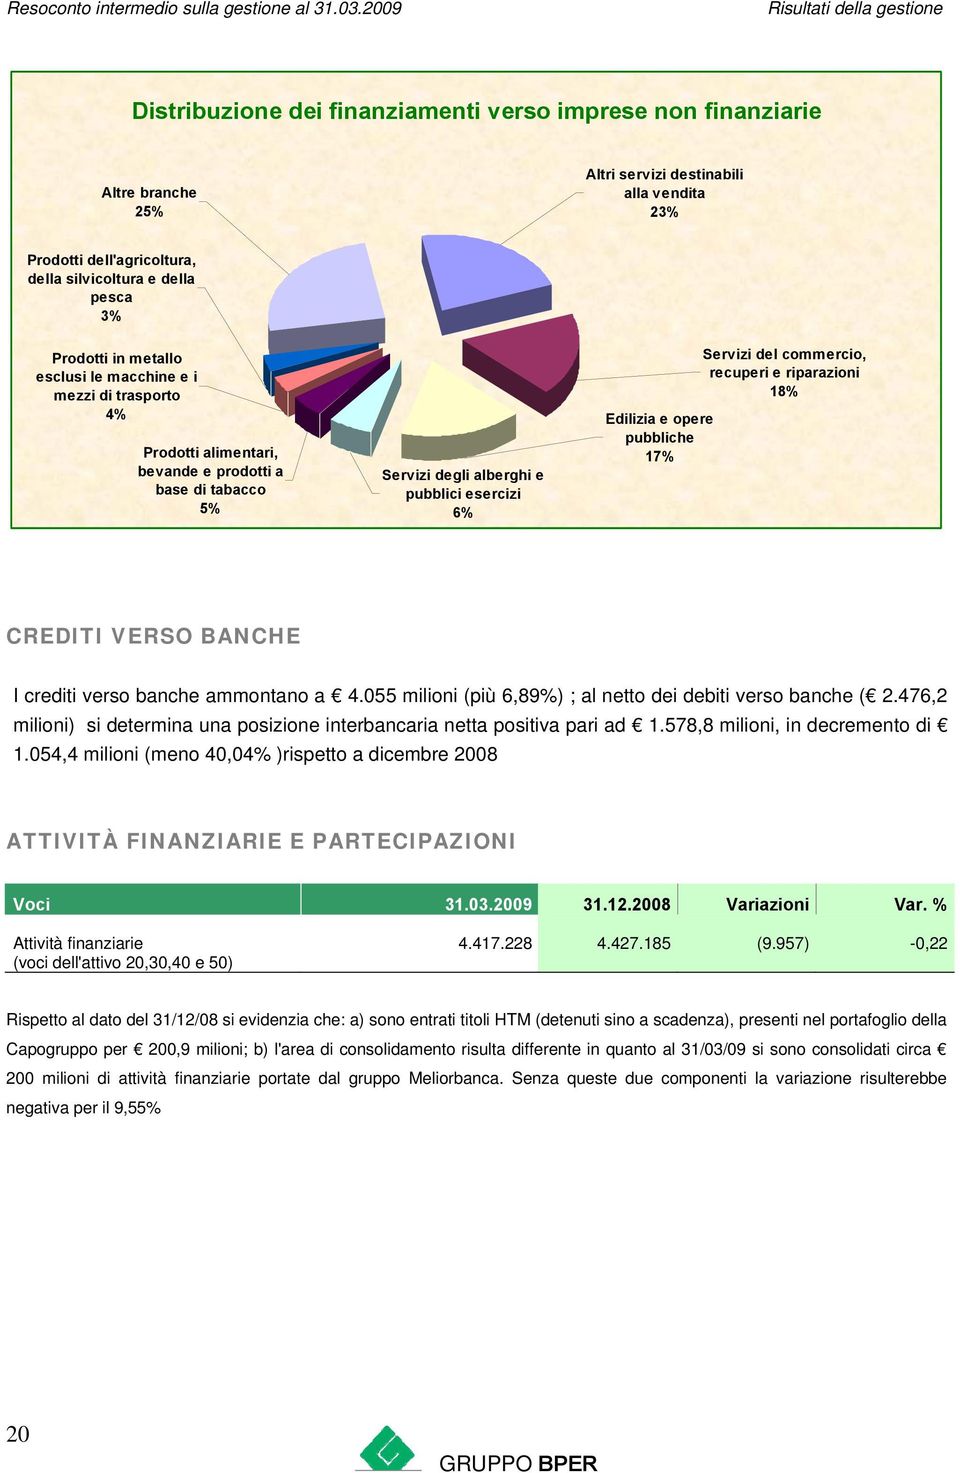 opere pubbliche 17% Servizi del commercio, recuperi e riparazioni 18% CREDITI VERSO BANCHE I crediti verso banche ammontano a 4.055 milioni (più 6,89%) ; al netto dei debiti verso banche ( 2.